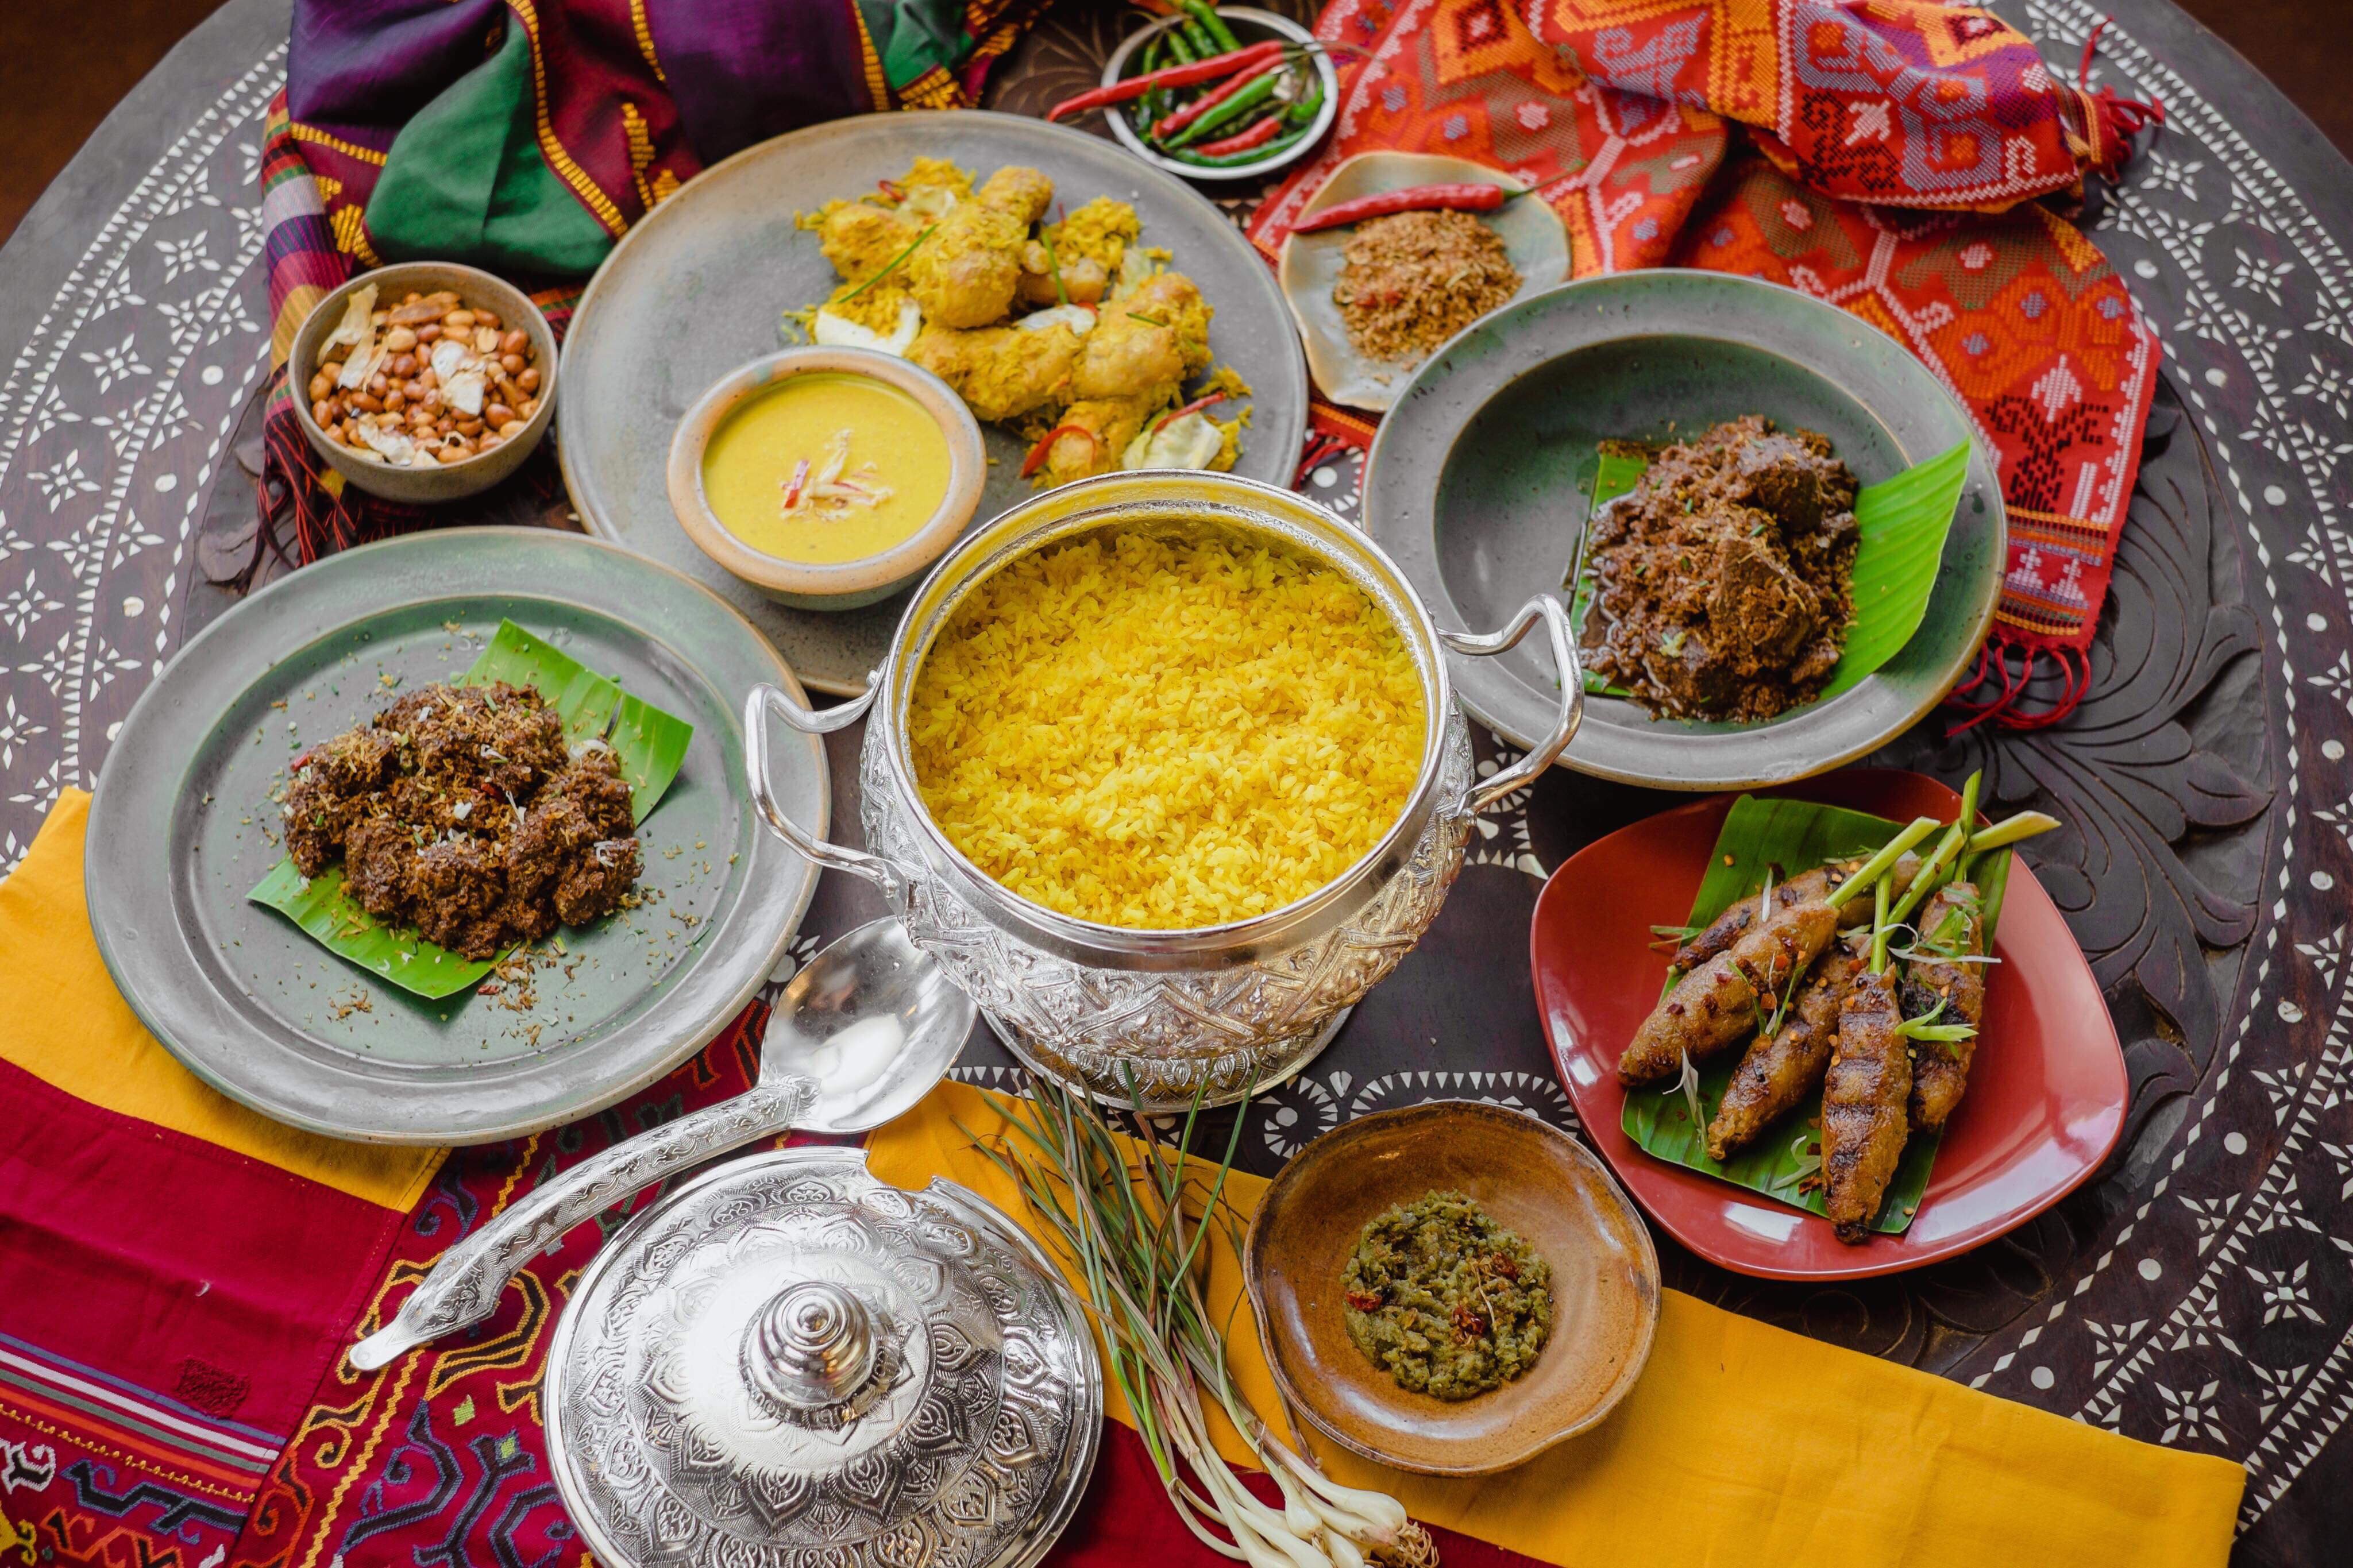 Discover the joy of halal food at Babu Kwan CDO